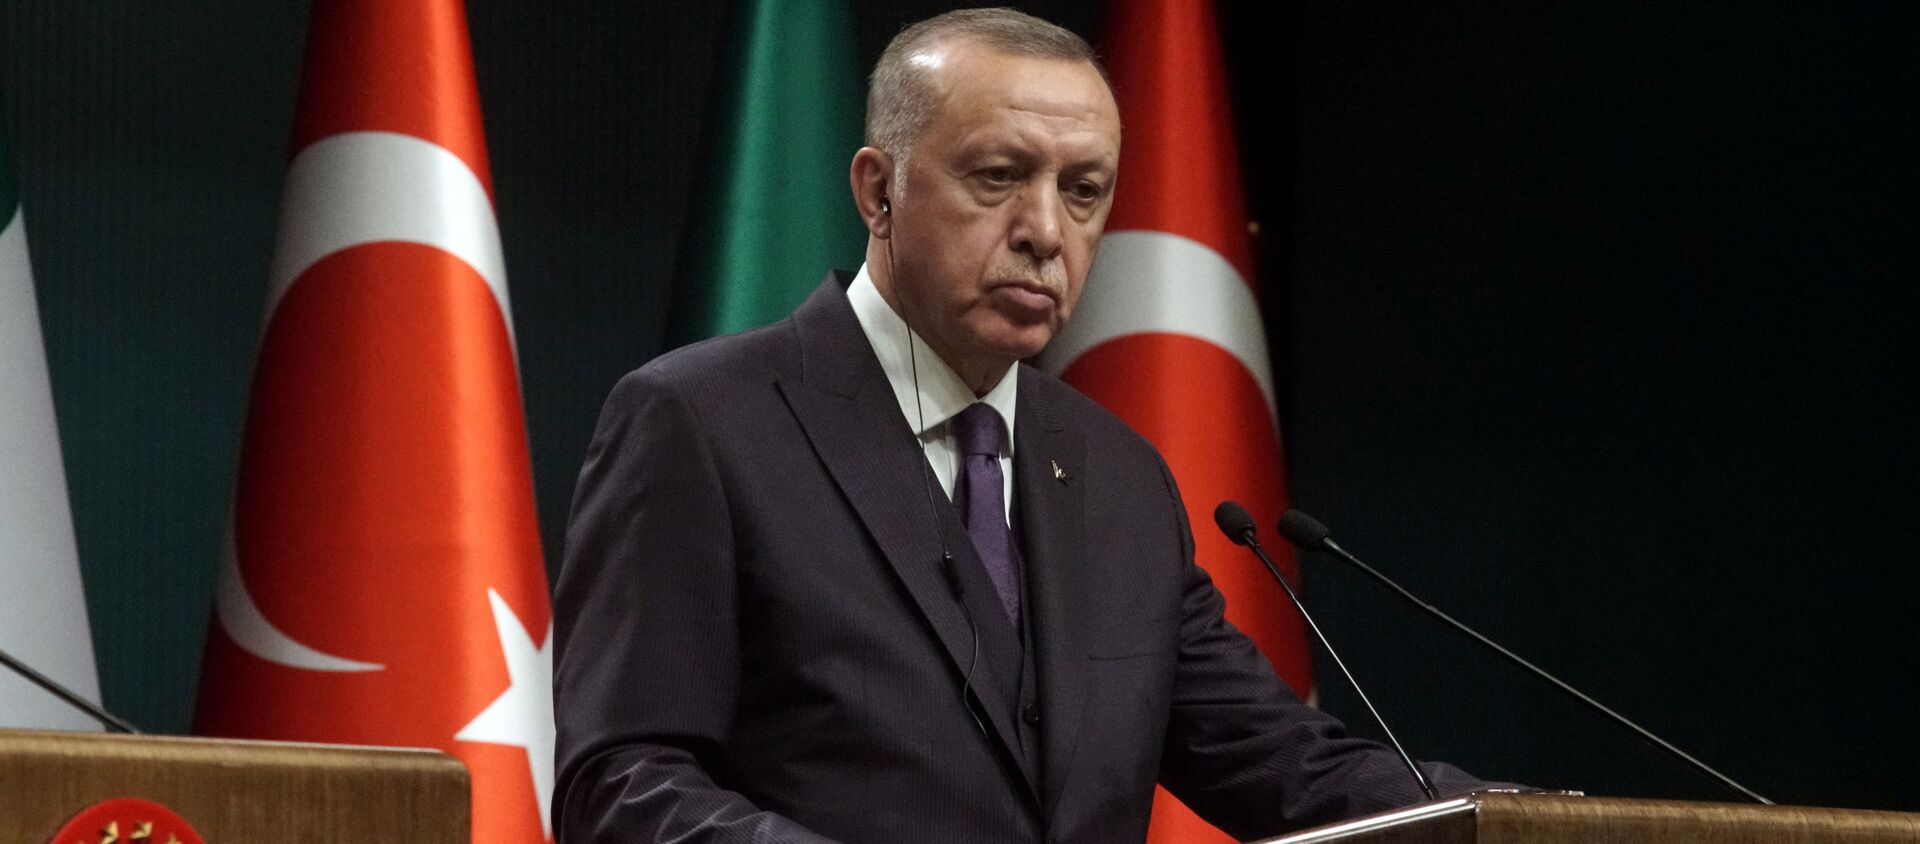 Recep Tayyip Erdogan, el presidente de Turquía - Sputnik Mundo, 1920, 03.02.2020